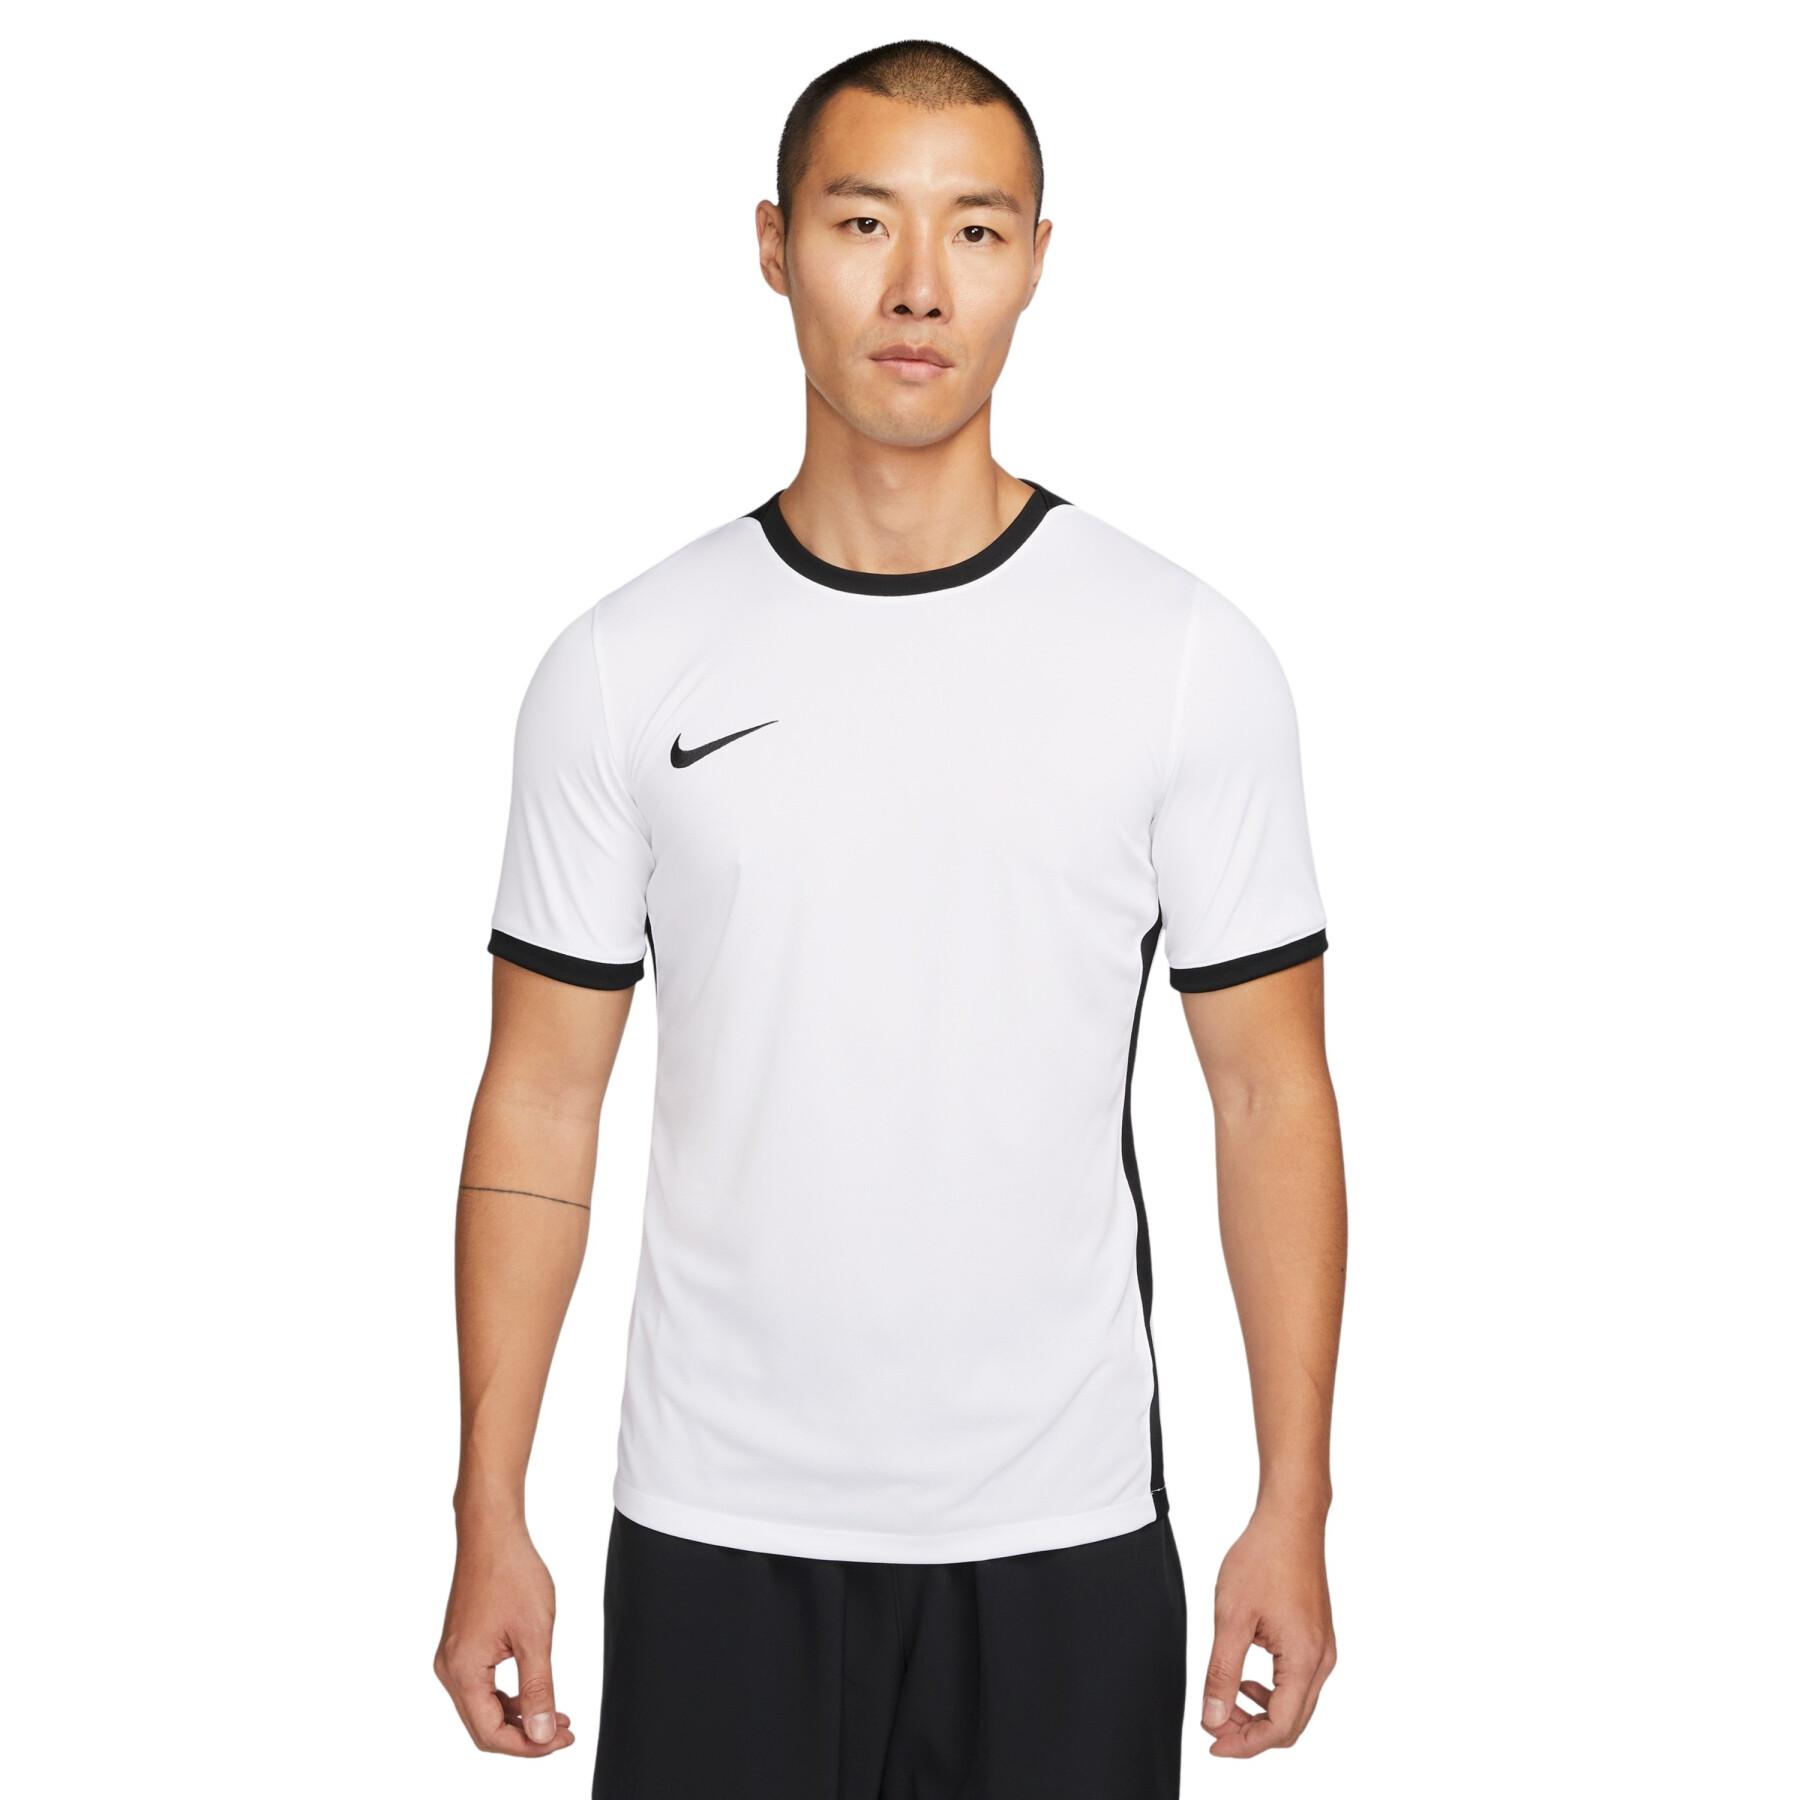 Jersey Nike Dri-FIT Challenge 4 - Nike - Training Shirts - Teamwear